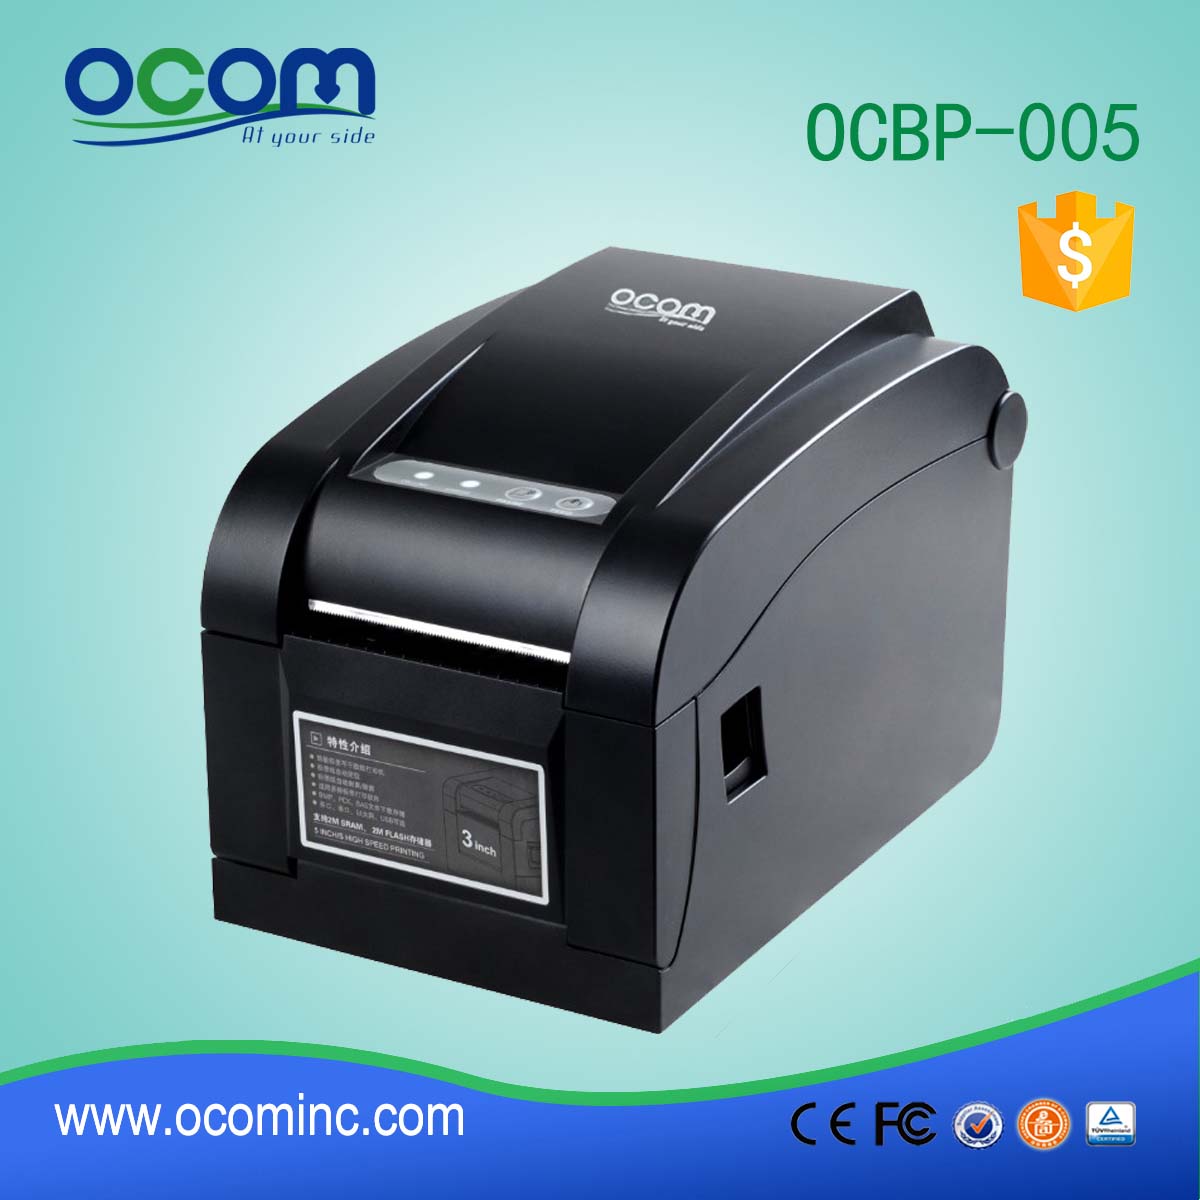 80mm Direct Barcode Label imprimante thermique, étiquette imprimée (OCBP-005)